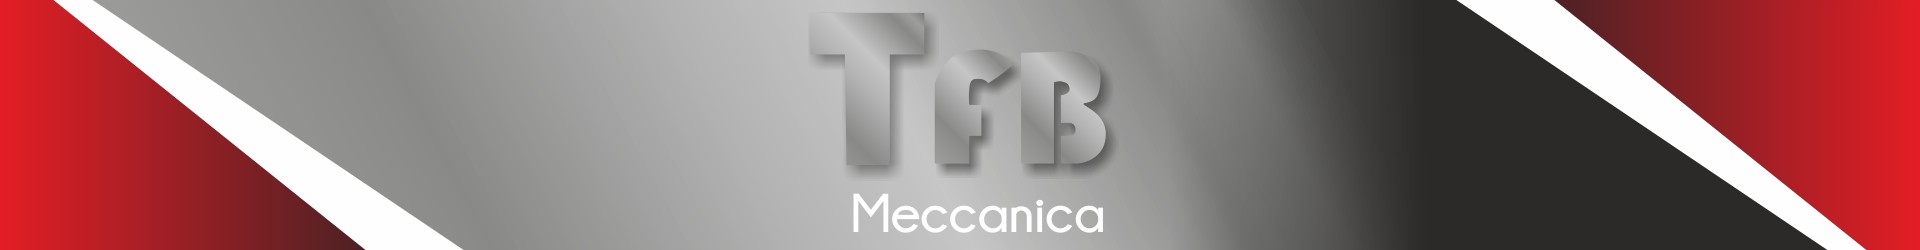 TFB meccanica - lavorazioni meccaniche e carpenteria meccanica